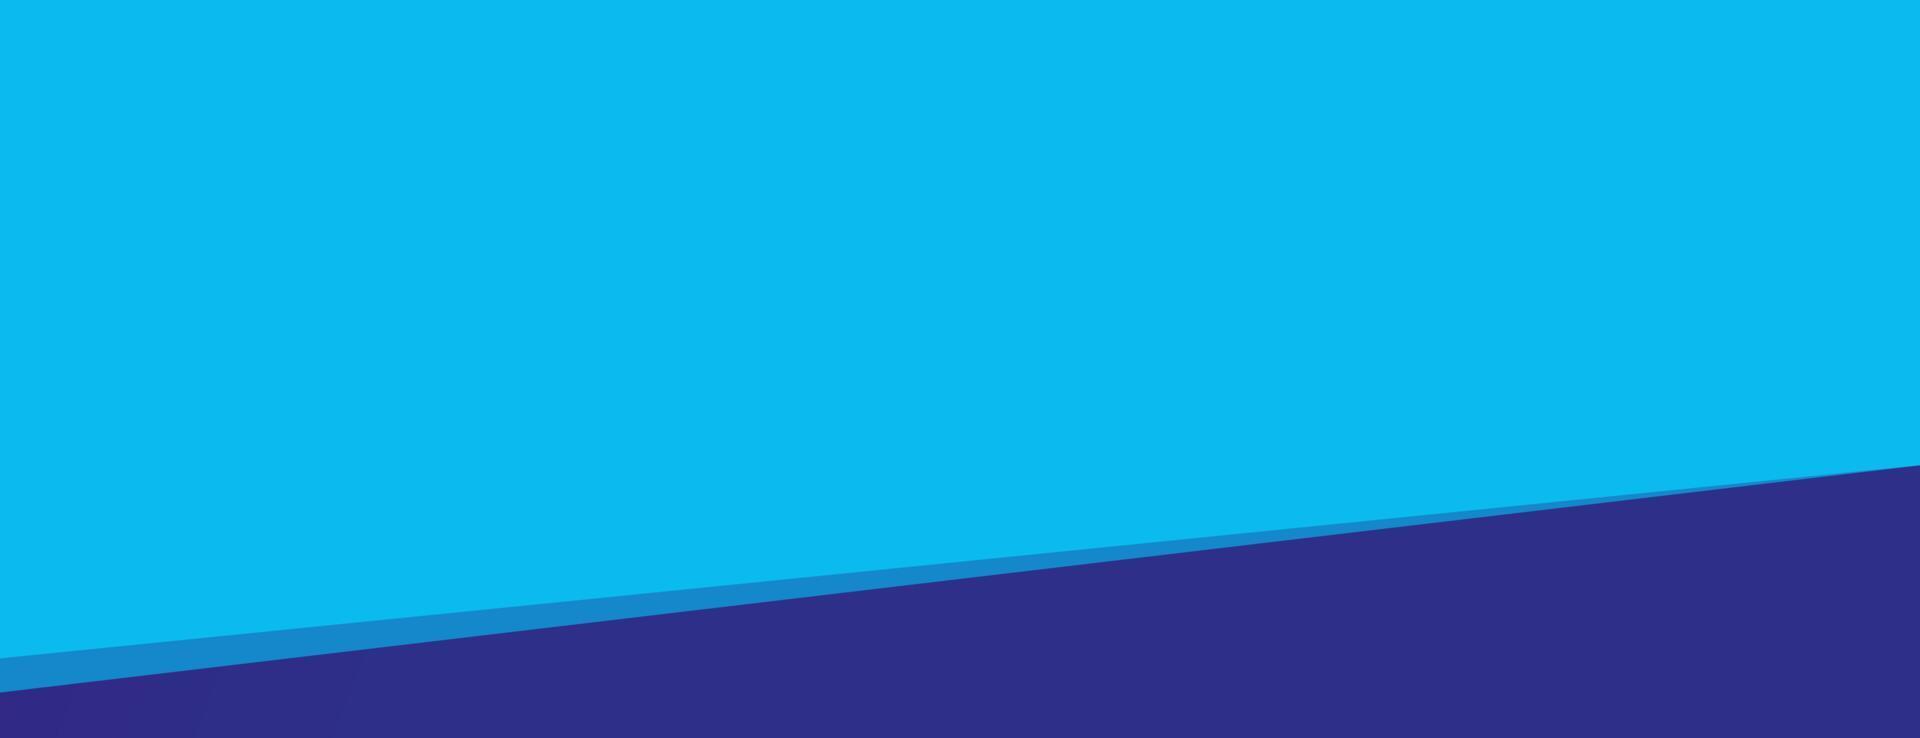 blauer Hintergrund, abstraktes einfaches Hintergrunddesign, Vektorillustration vektor